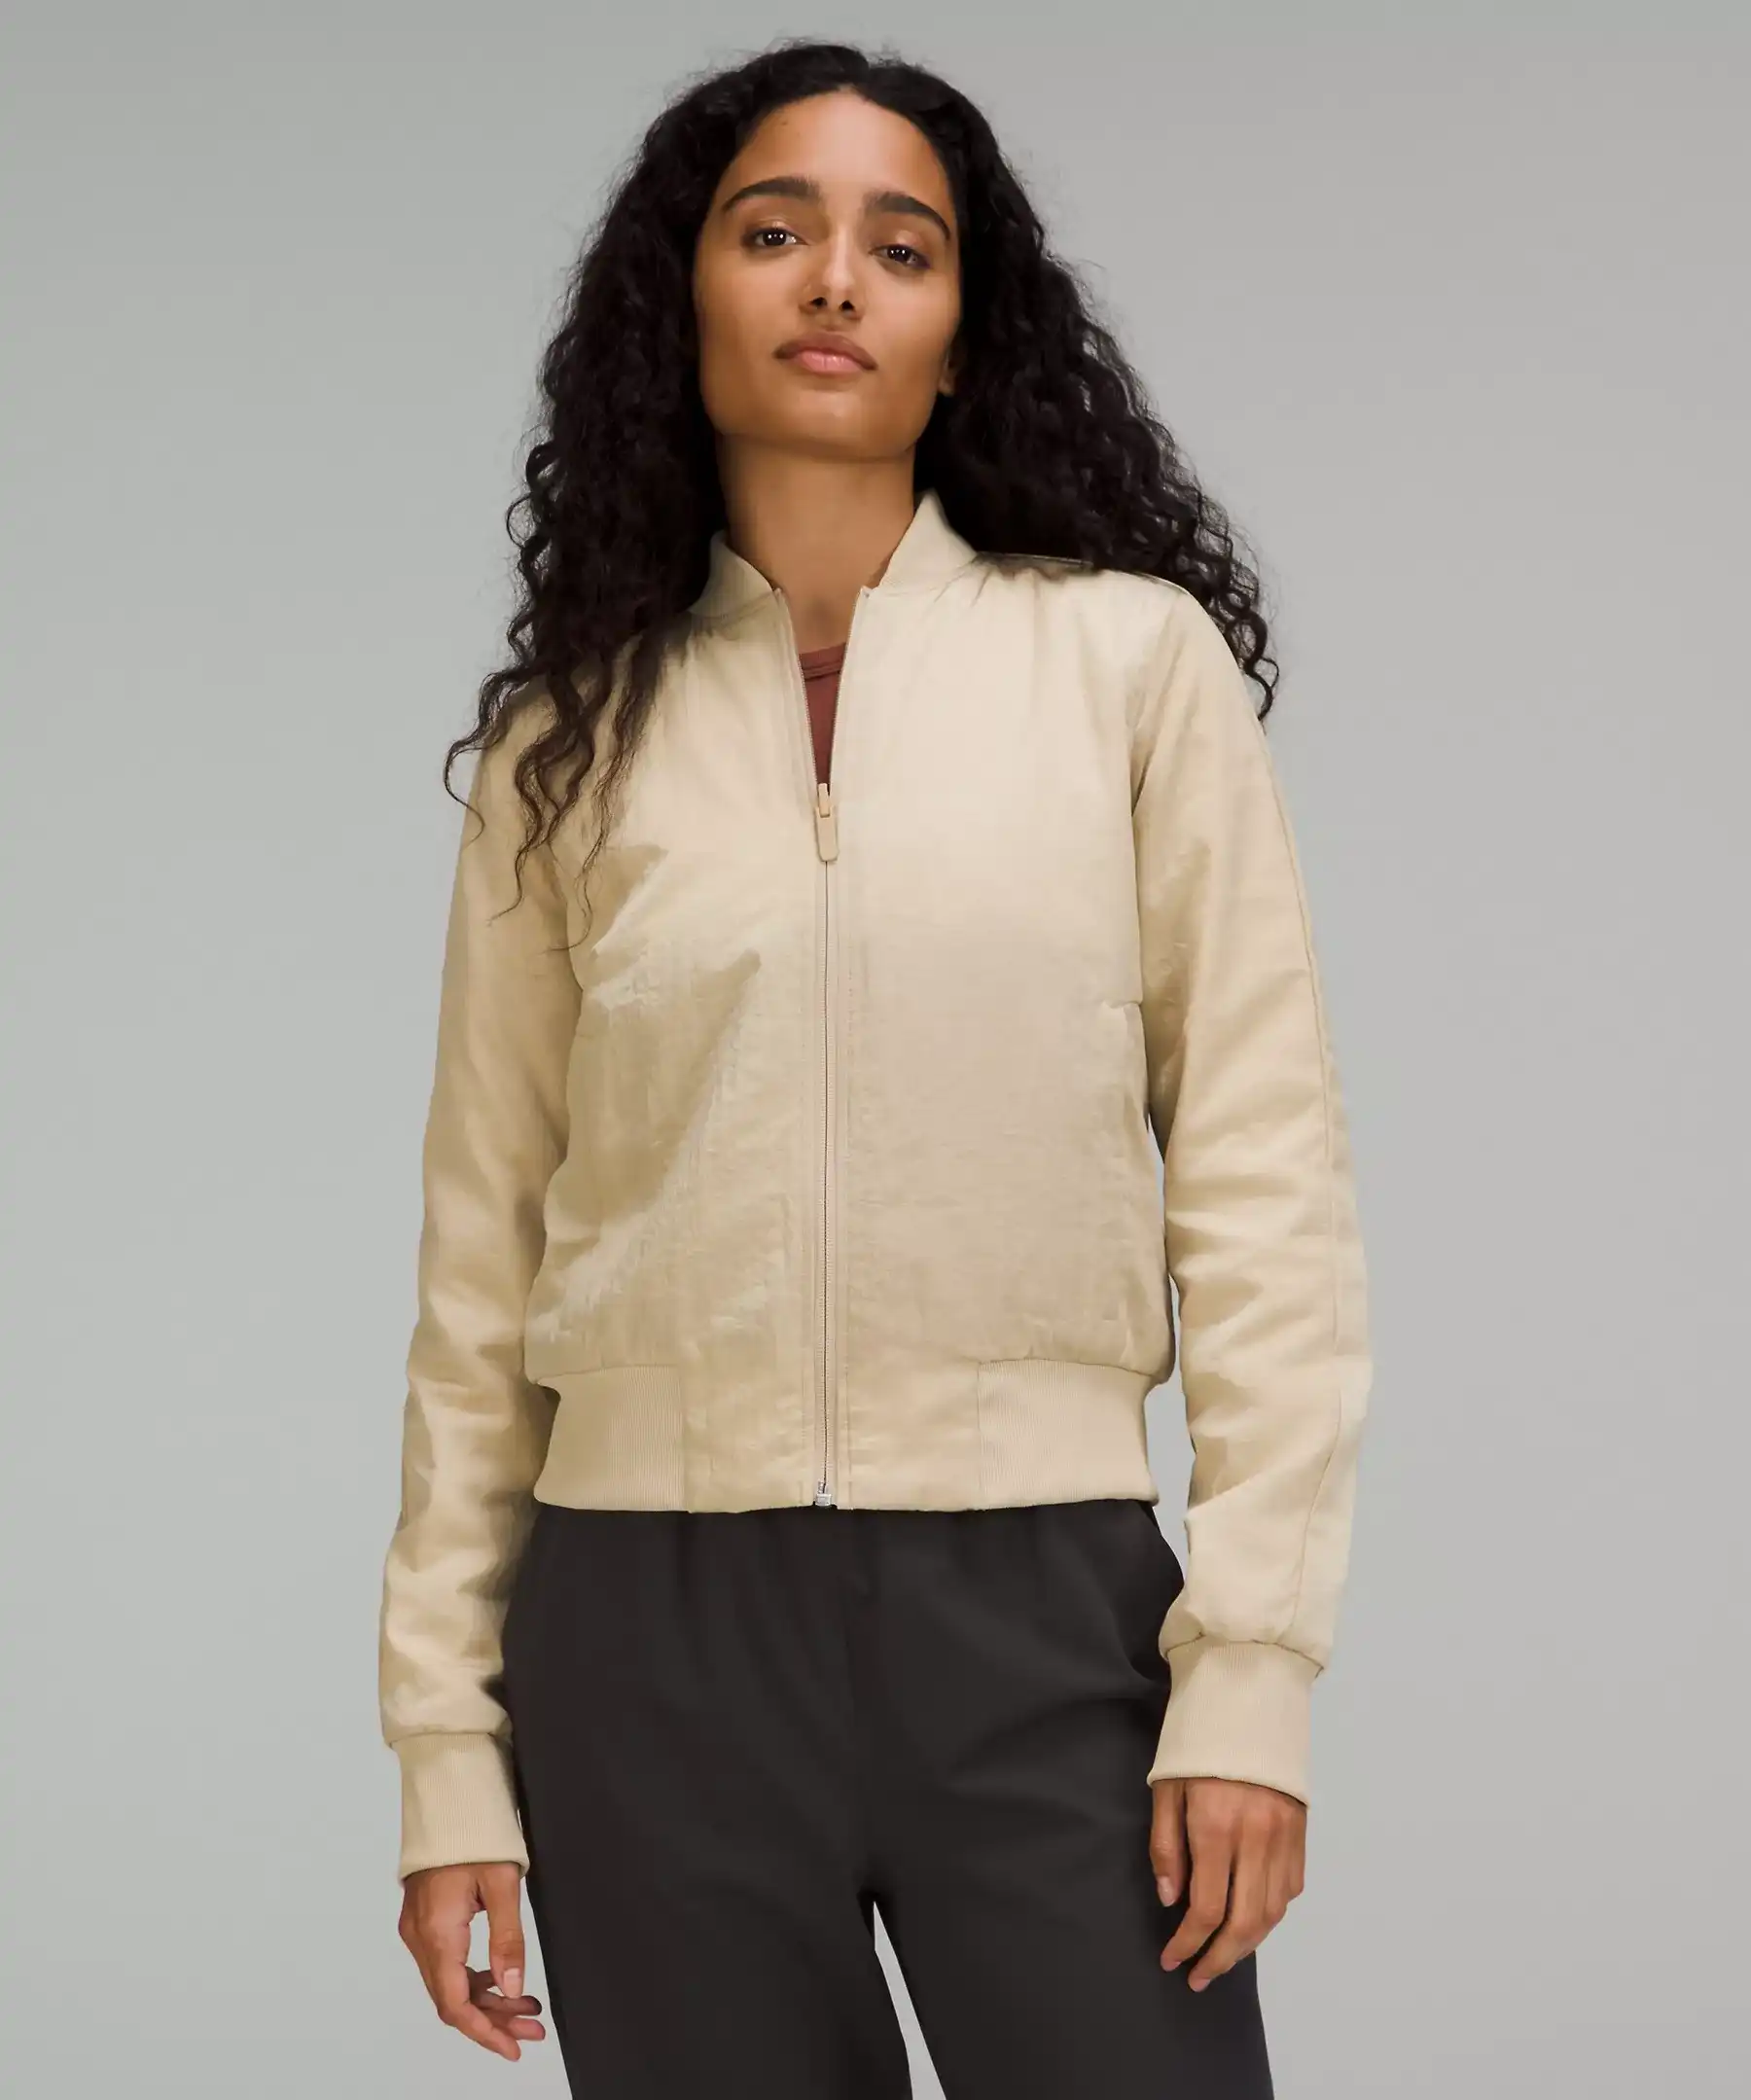 model wearing khaki bomber jacket